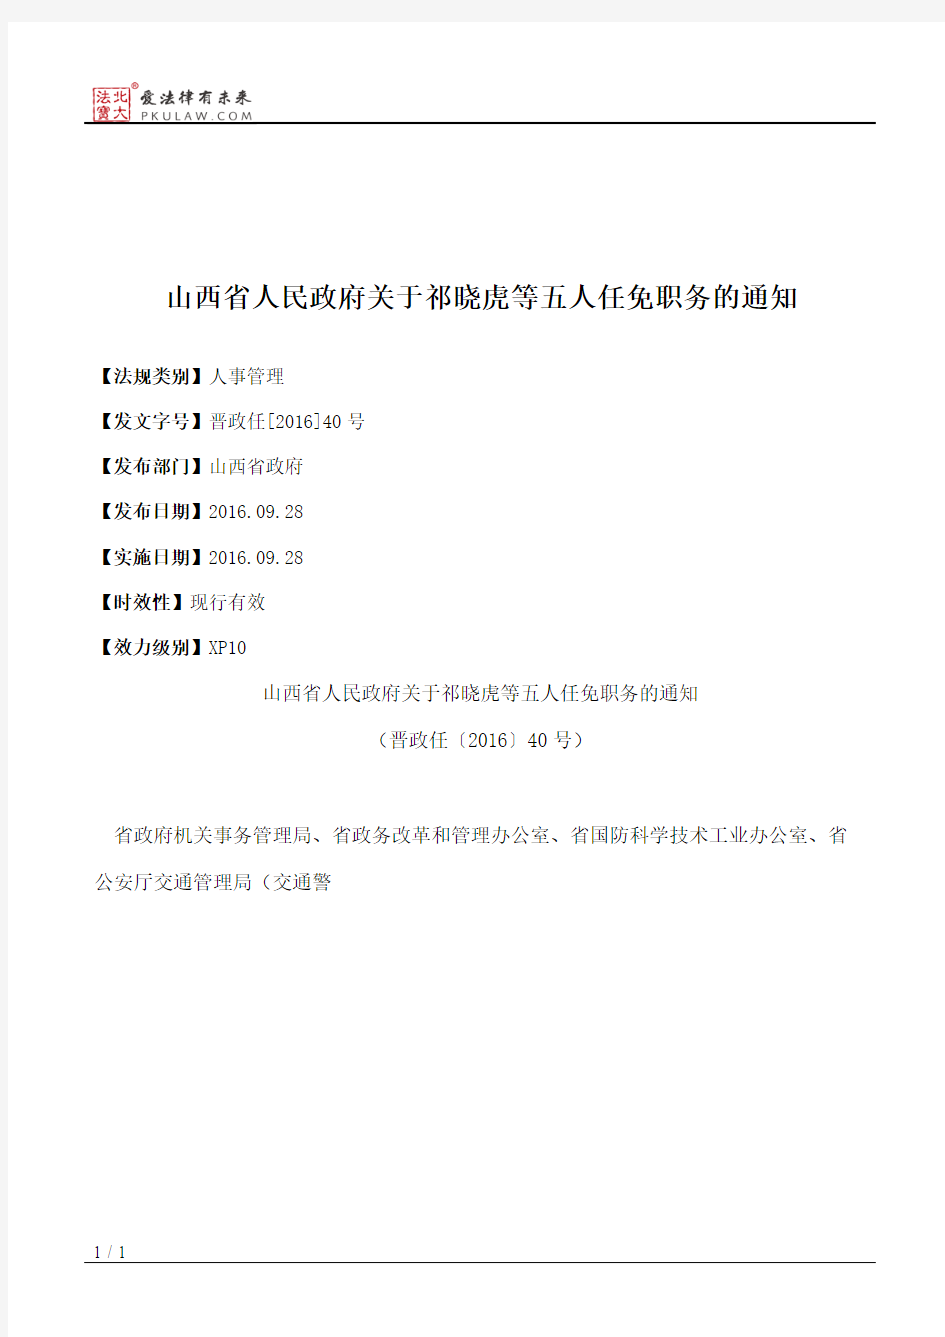 山西省人民政府关于祁晓虎等五人任免职务的通知